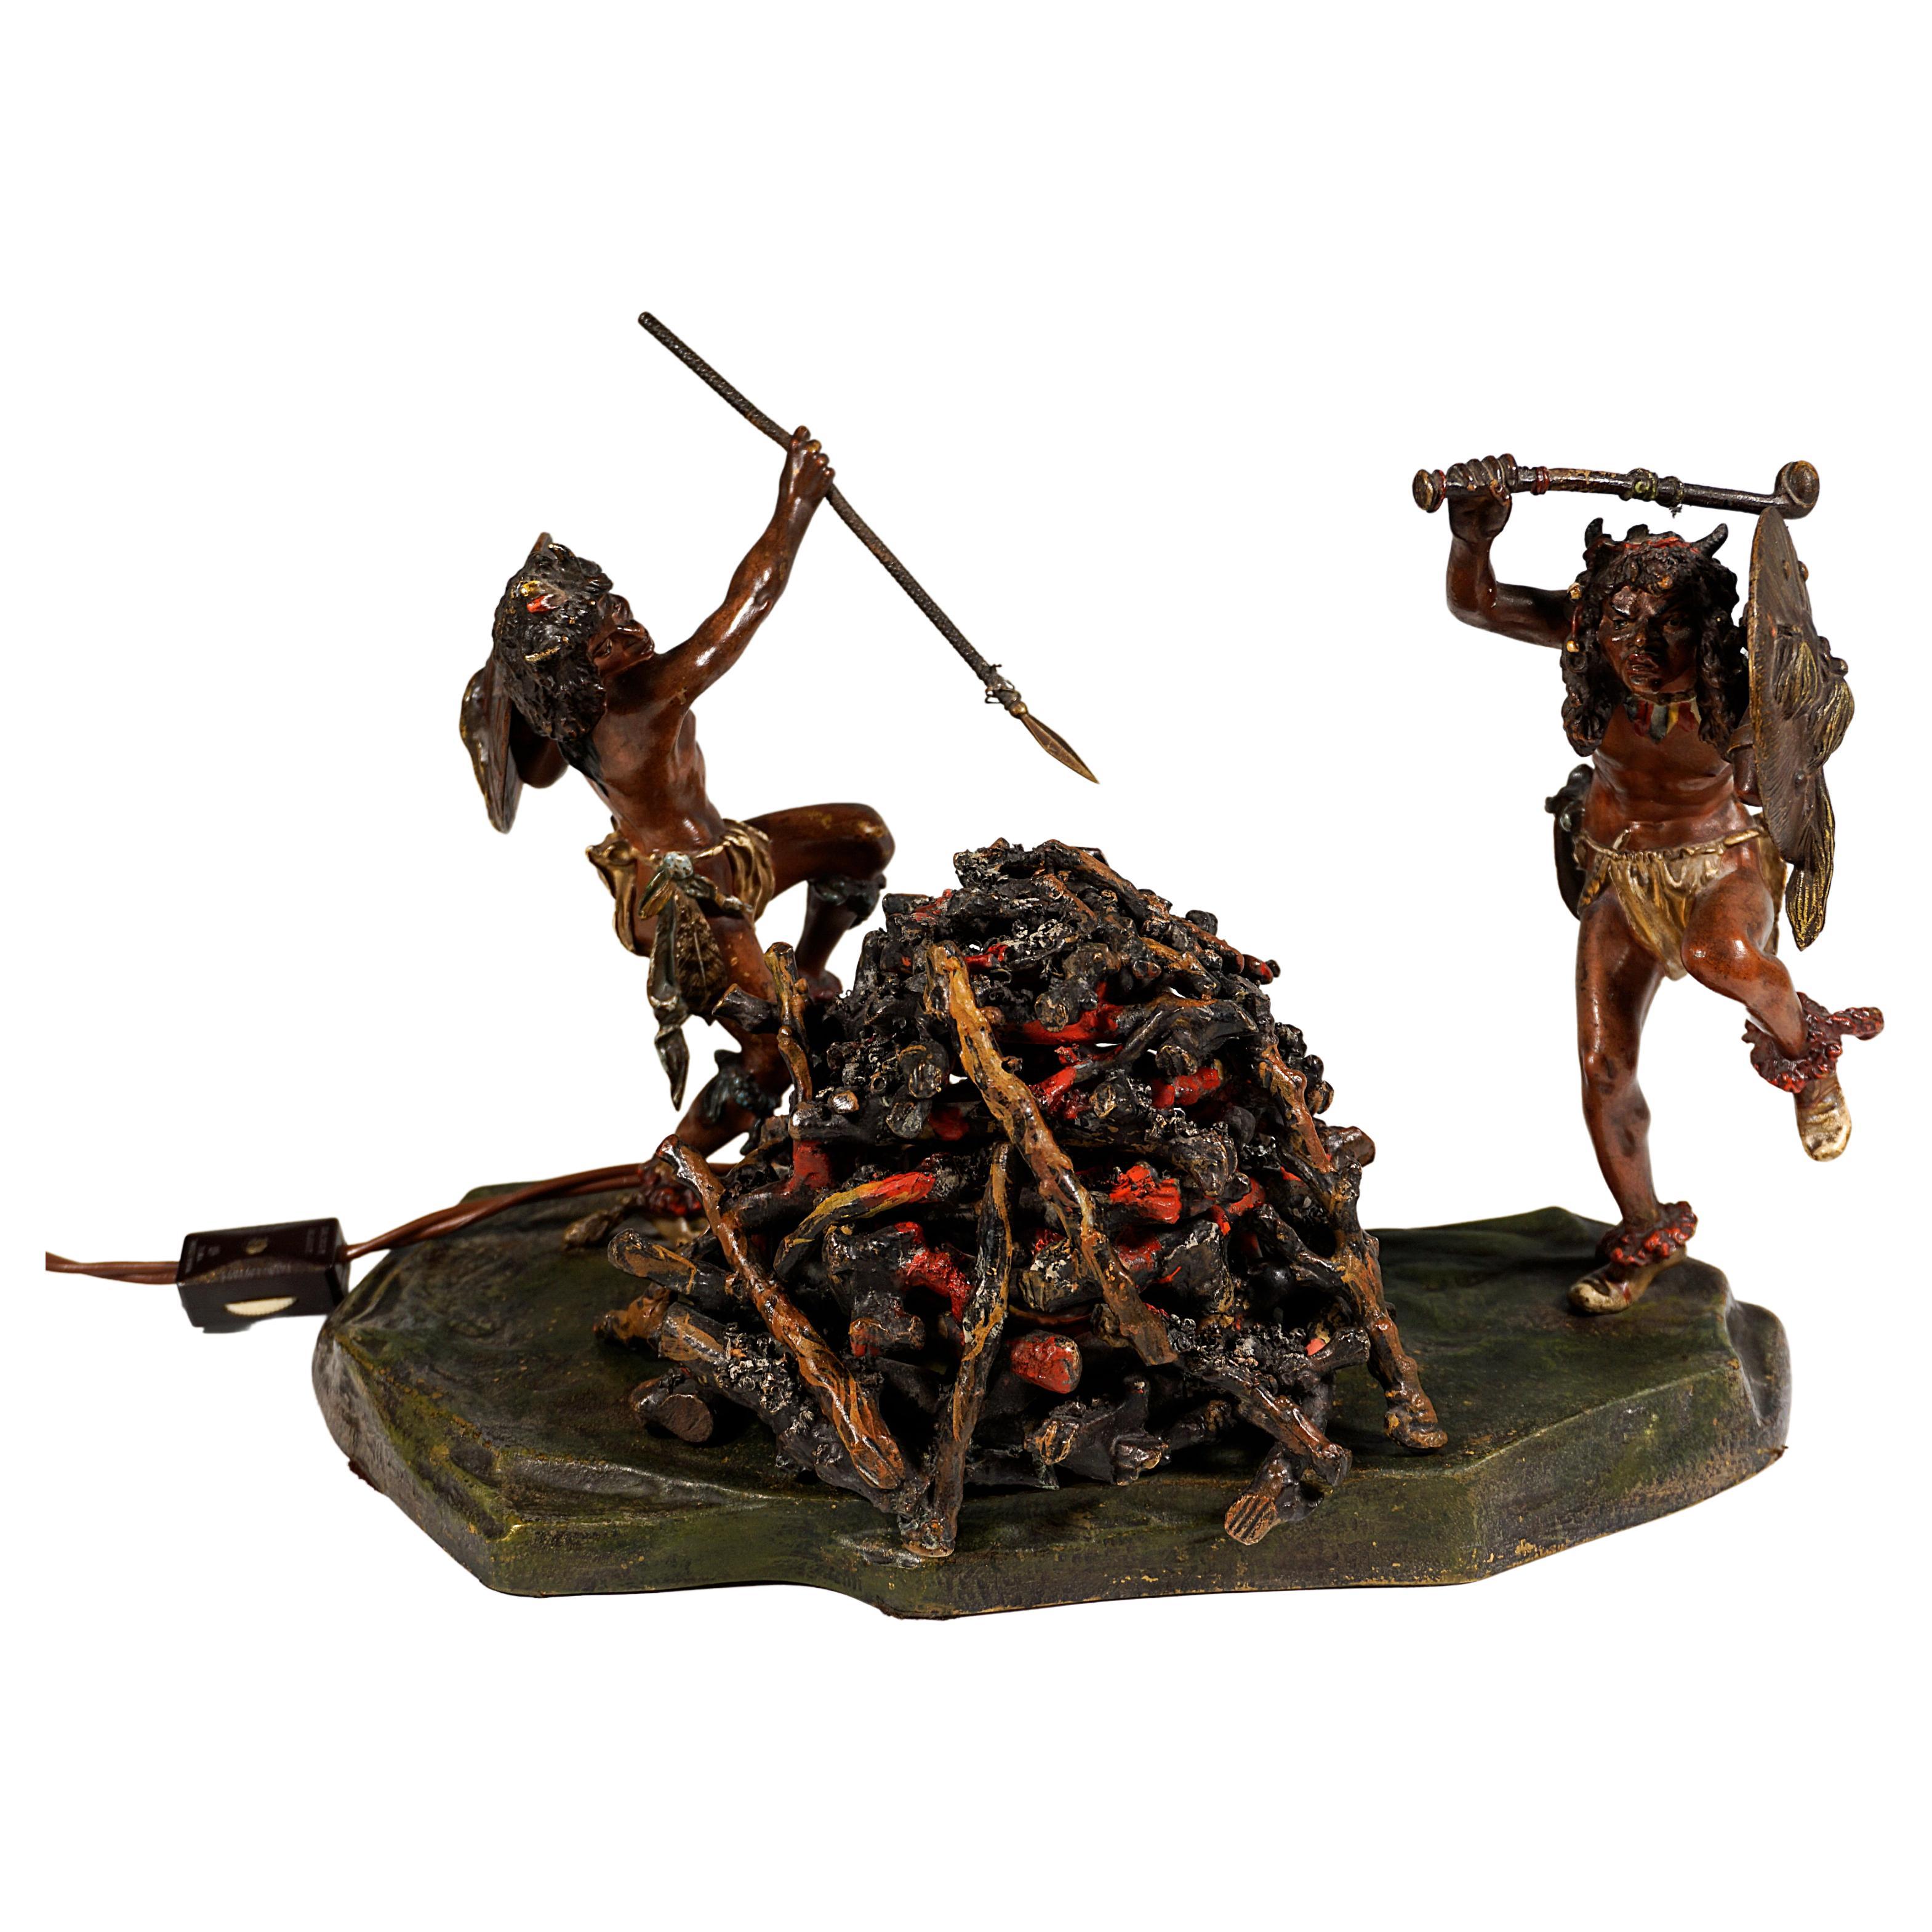 Sehr seltenes Stück Wiener Bronzekunst:
Zwei barfüßige indianische Krieger mit gehörntem Kopfschmuck und Lendentüchern sowie Federn um Hüften und Beine, mit Schilden an den Unterarmen und erhobenen Waffen, tanzen um ein Lagerfeuer.
Auf einem